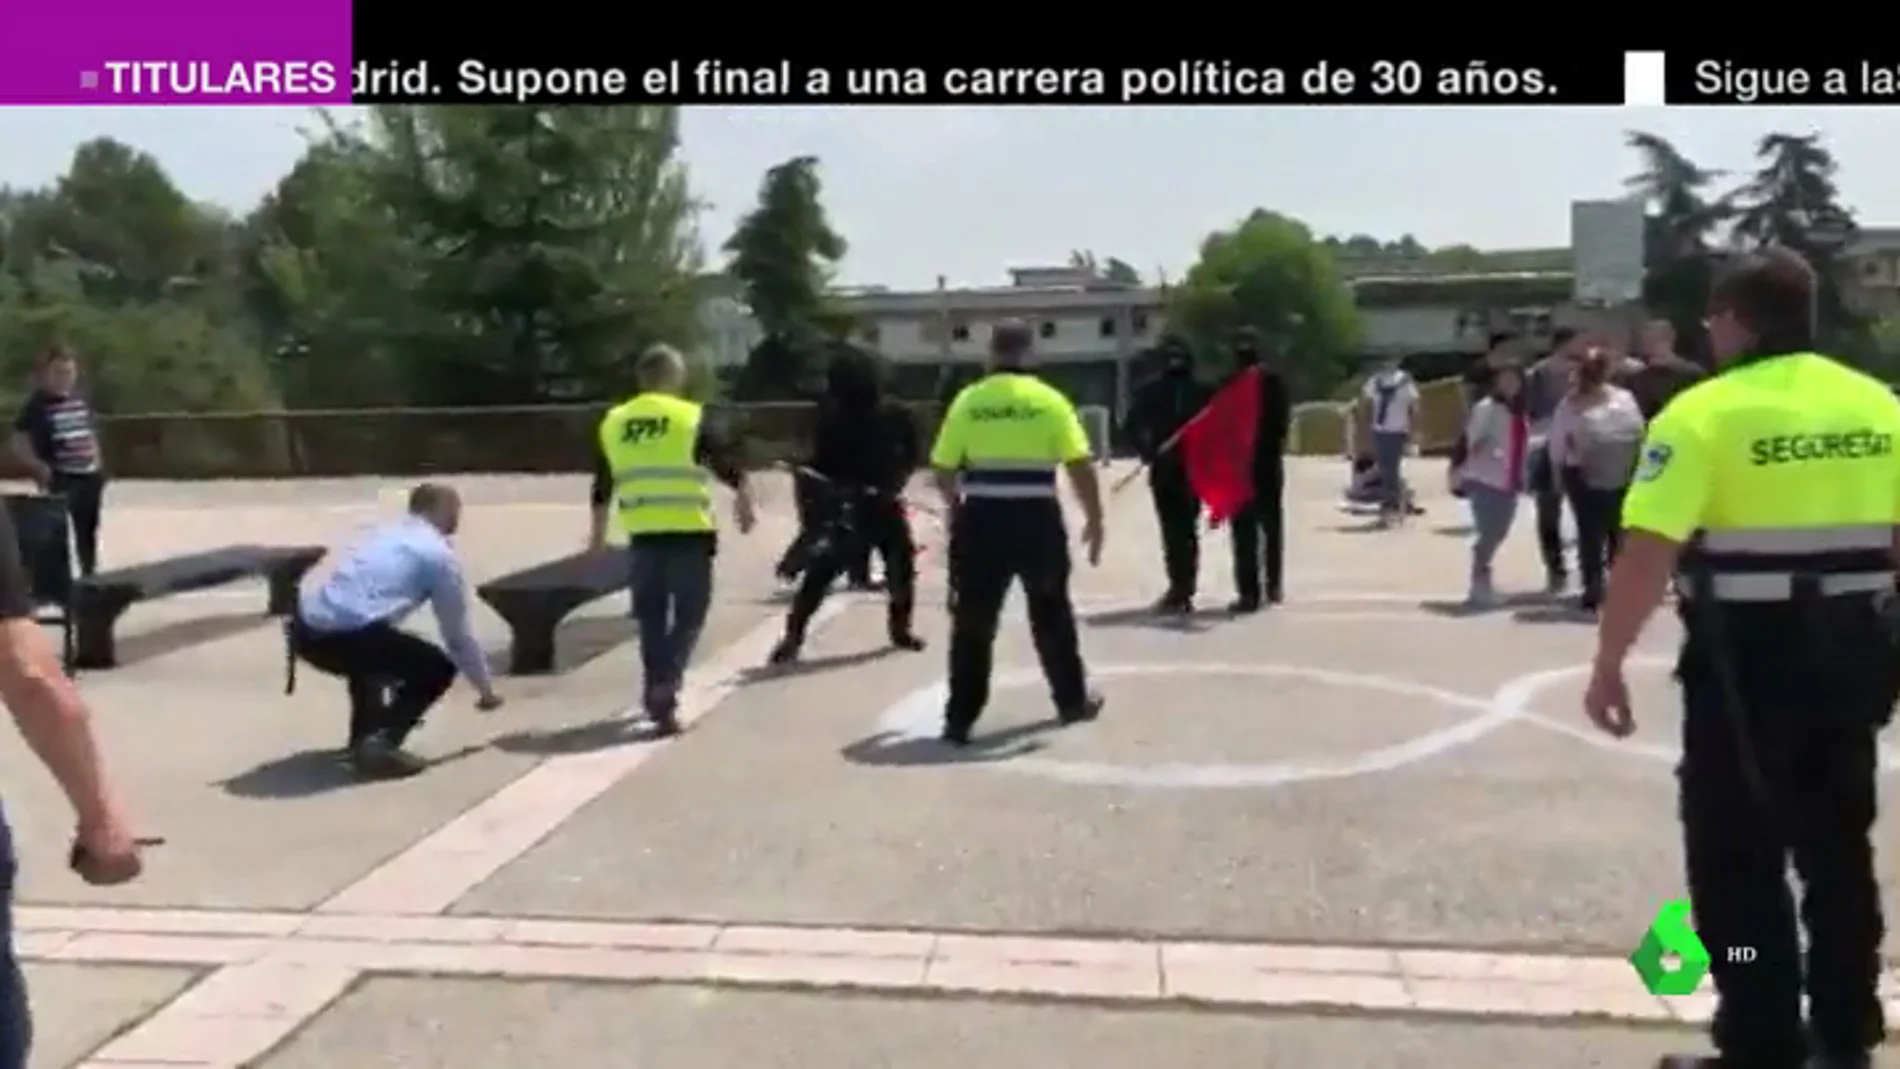 Les increparon y les golpearon con palos: las imágenes de la agresión a Societat Civil Catalana en la Autónoma de Barcelona  